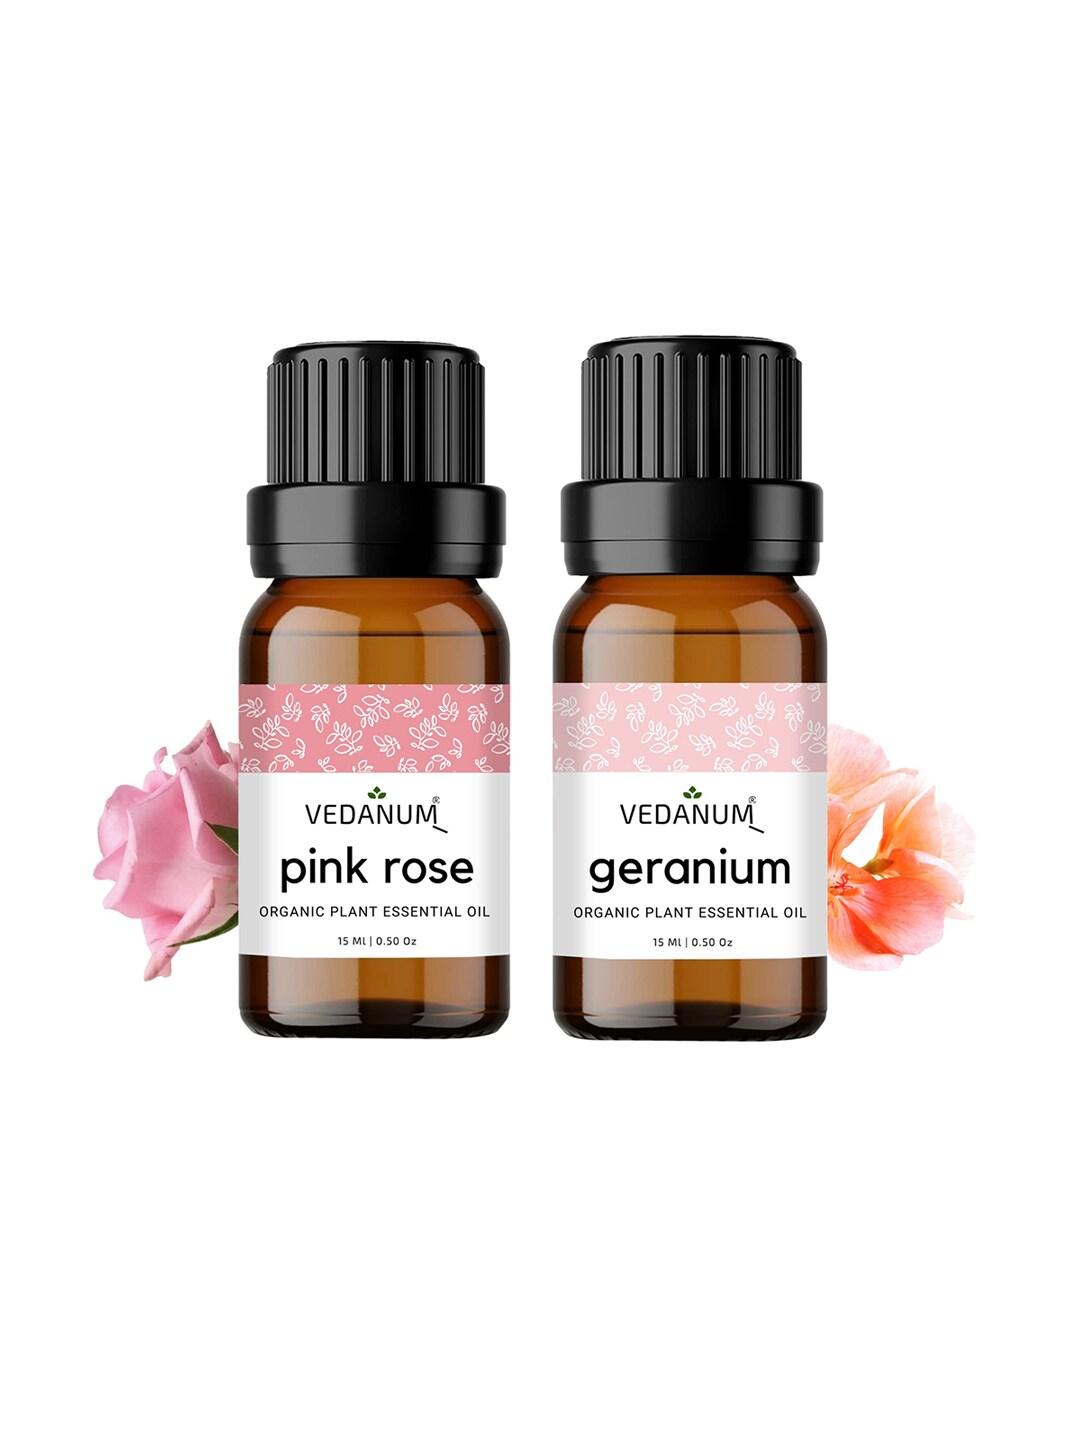 VEDANUM Set of 2 Organic Plant Essential Oils 15 ml Each - Pink Rose and Geranium